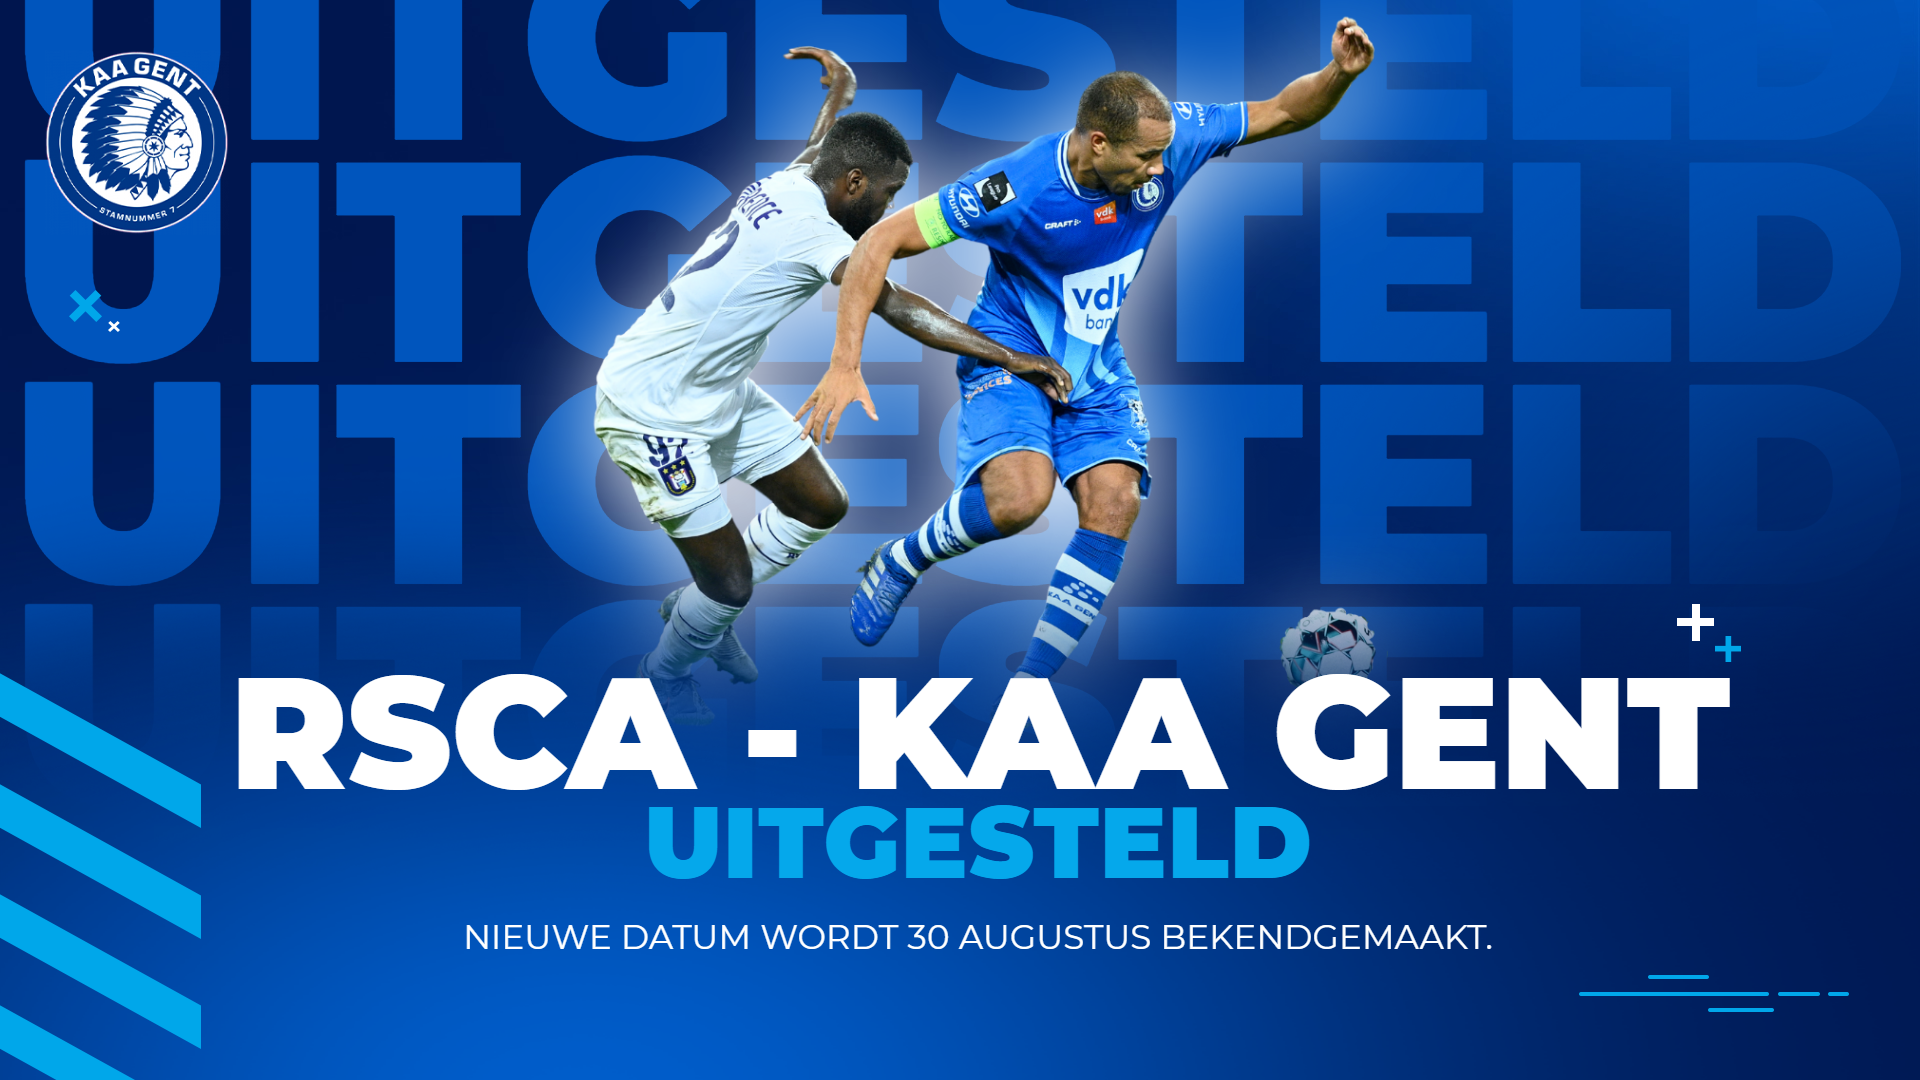 Anderlecht - KAA Gent uitgesteld